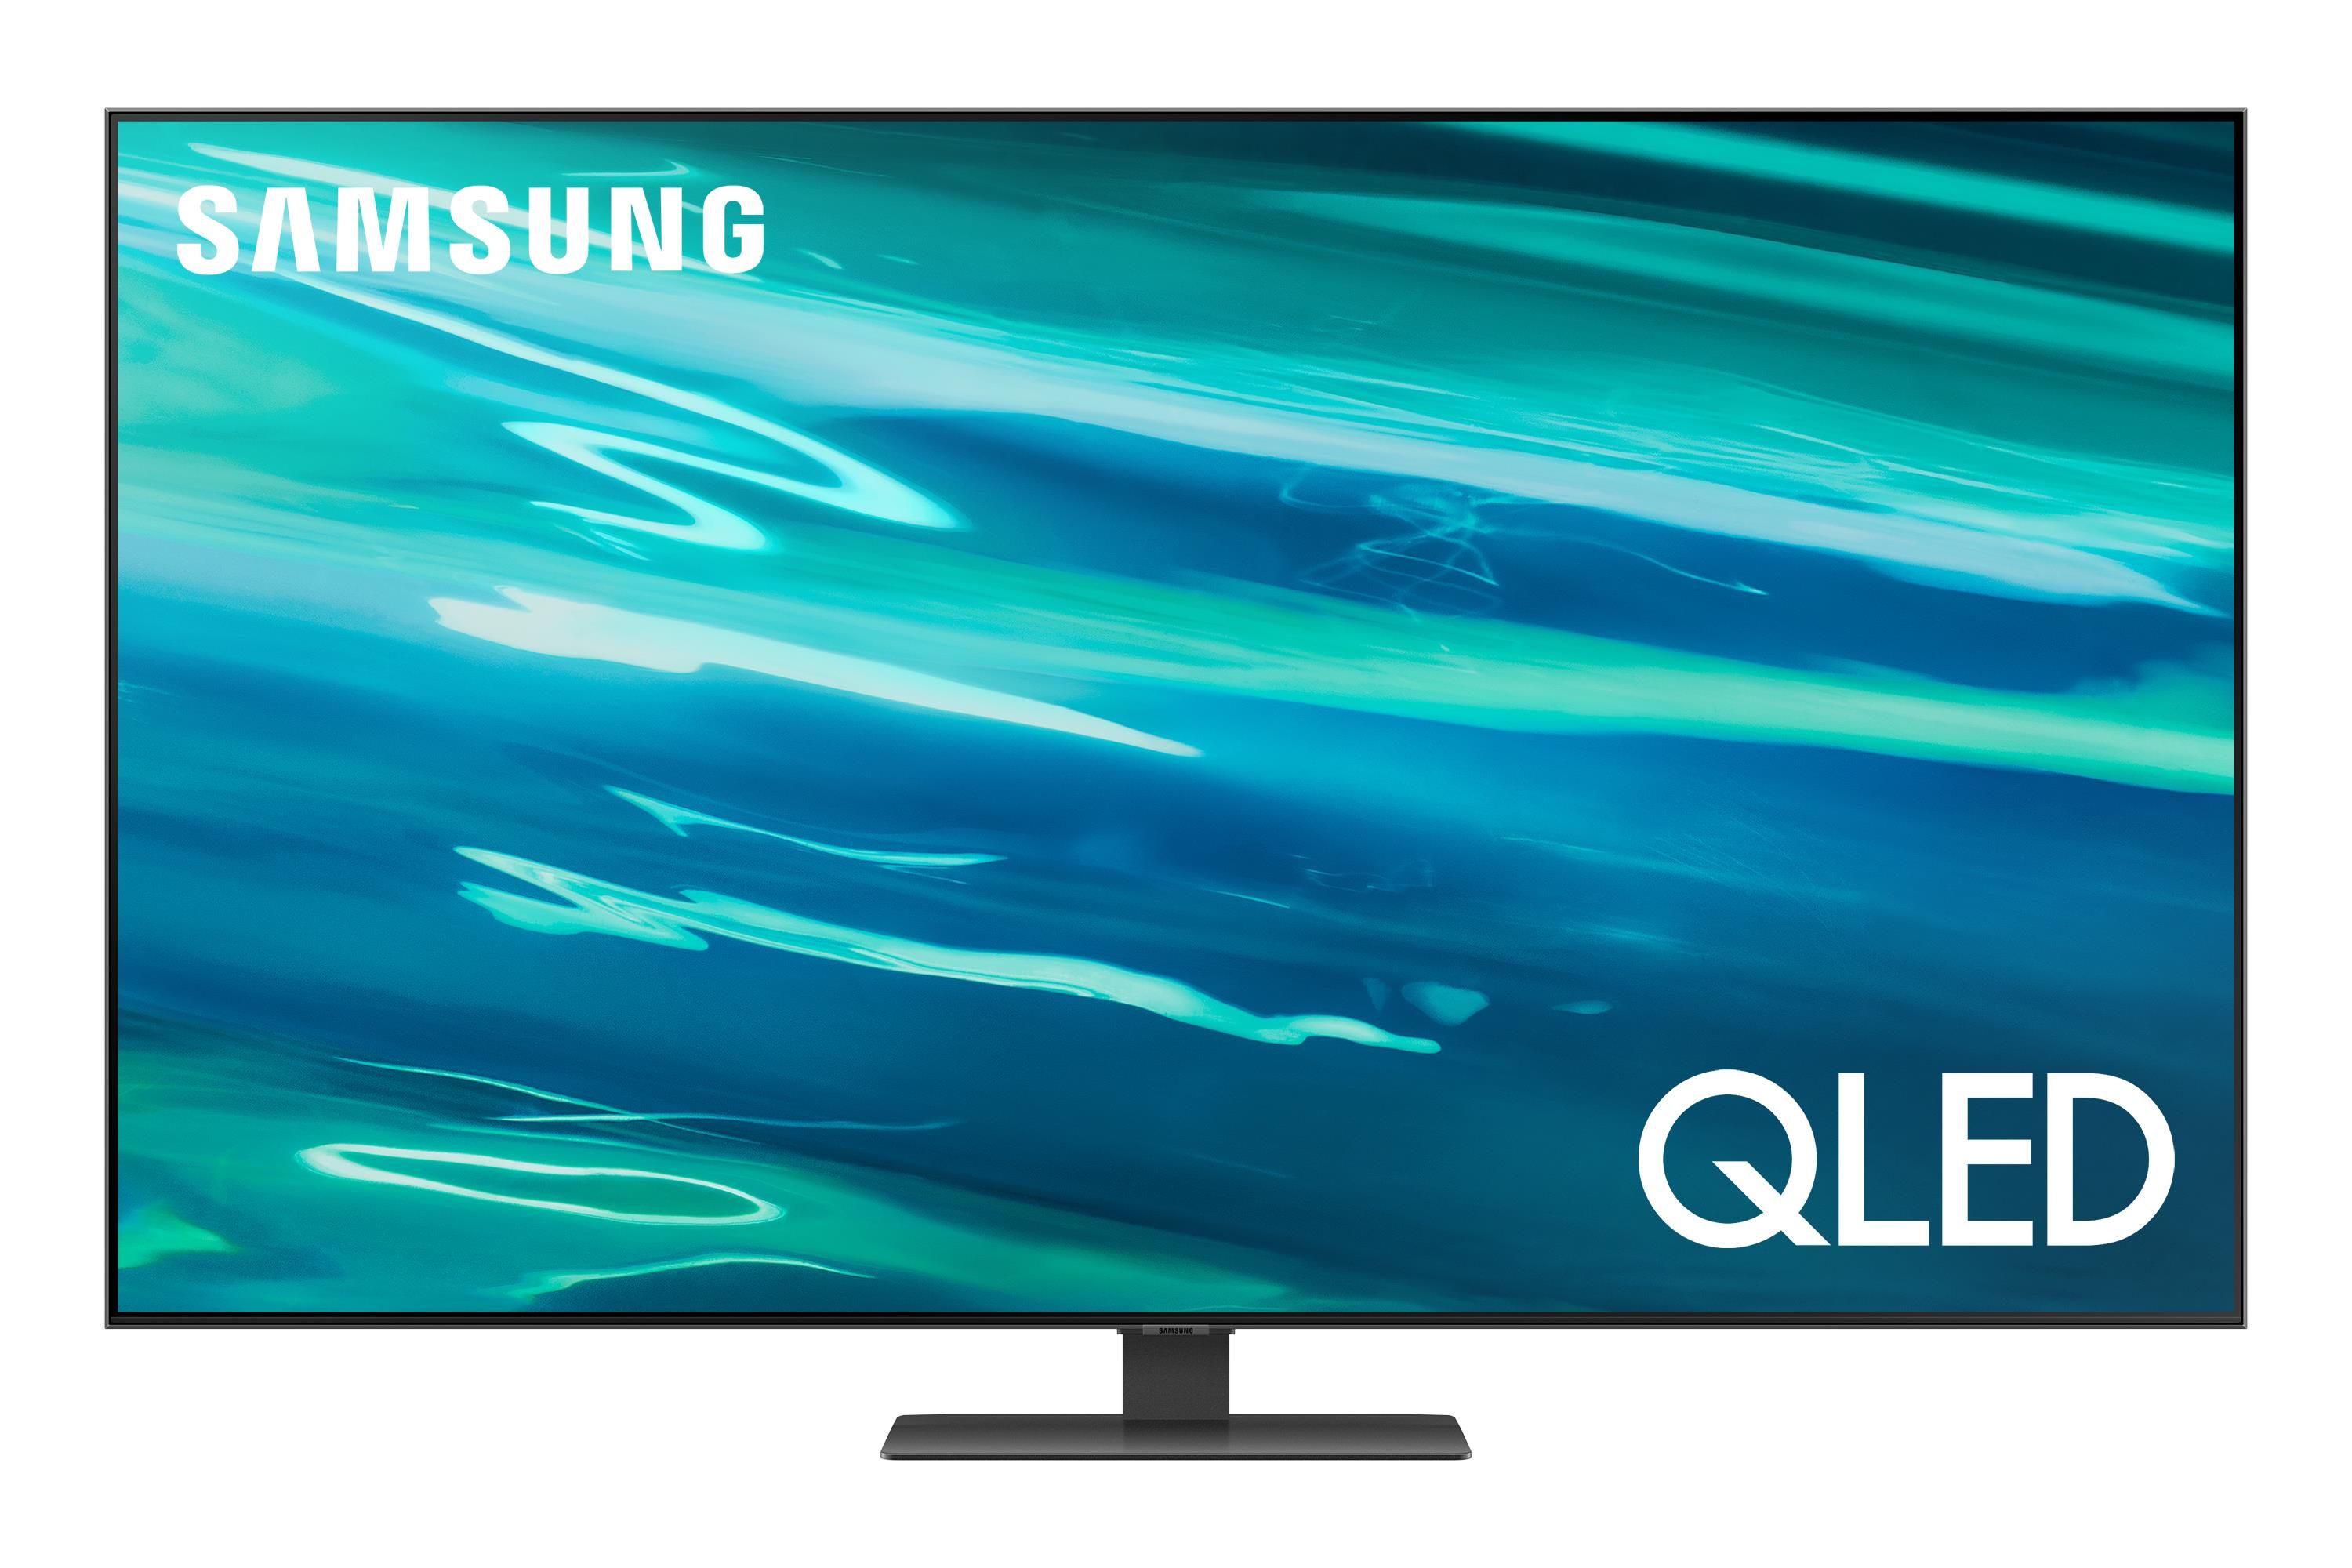 Samsung QLed Smart Tv